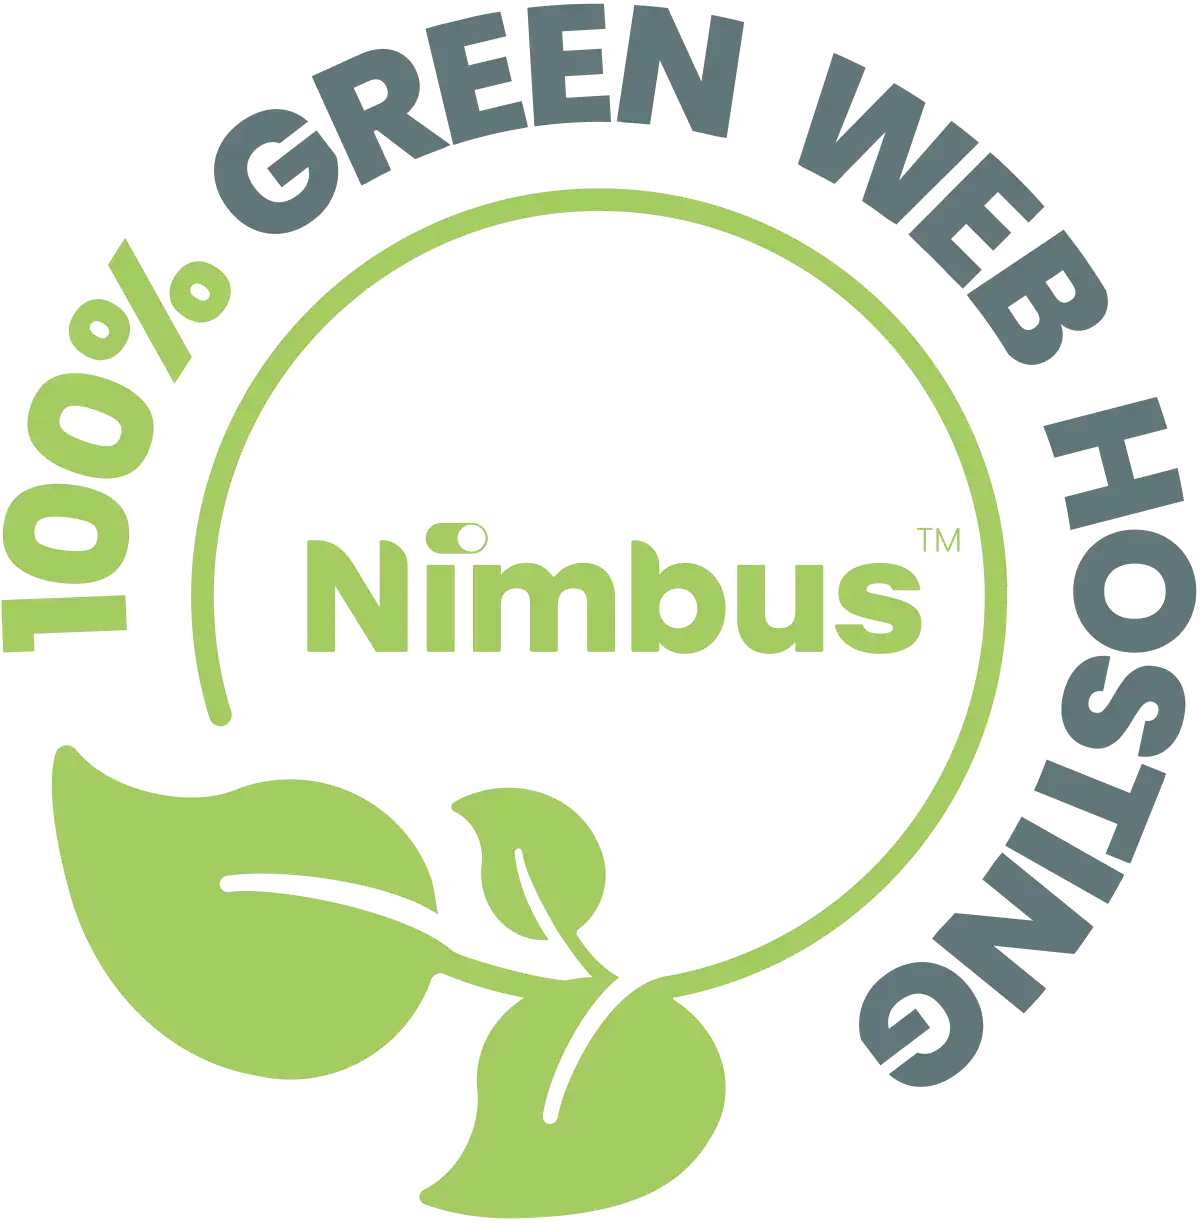 Nimbus 100% green web hosting